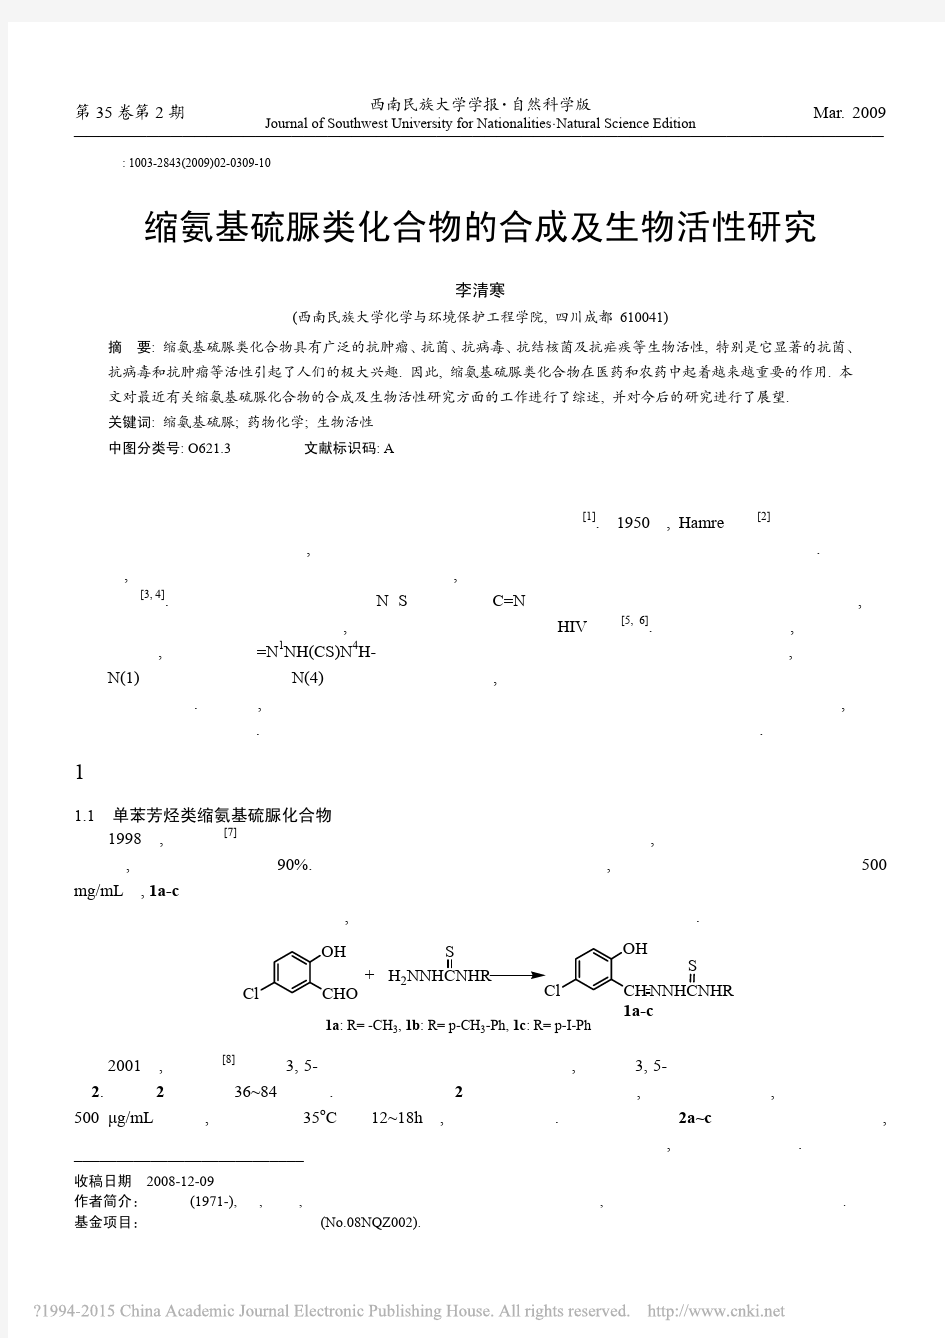 缩氨基硫脲类化合物的合成及生物活性研究_李清寒